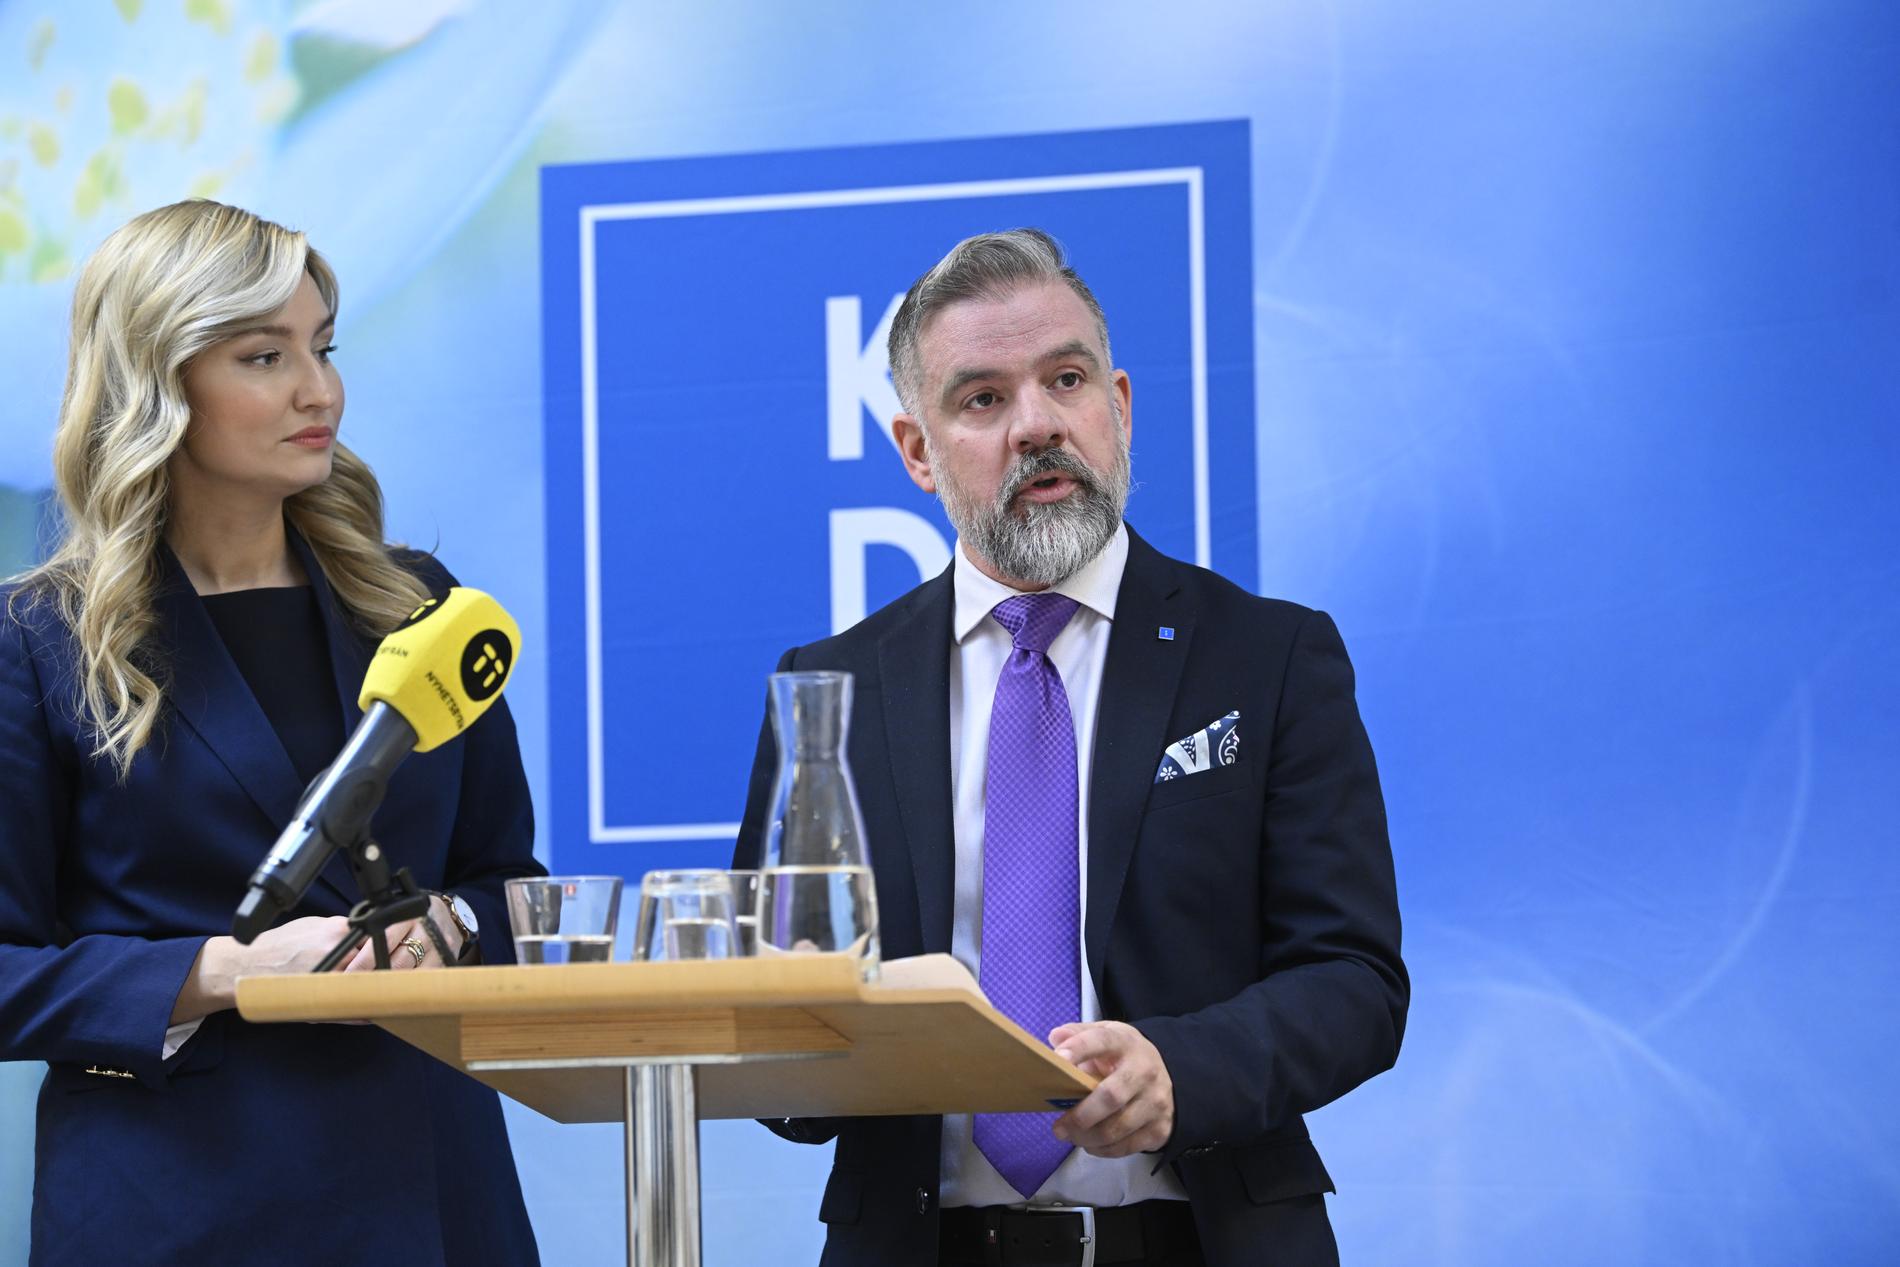 Johan Ingerö är partisekreterare för KD. Han beskriver det som att hans parti är i en ”medial motvind” när Tidölagets förslag blir kritiserade.